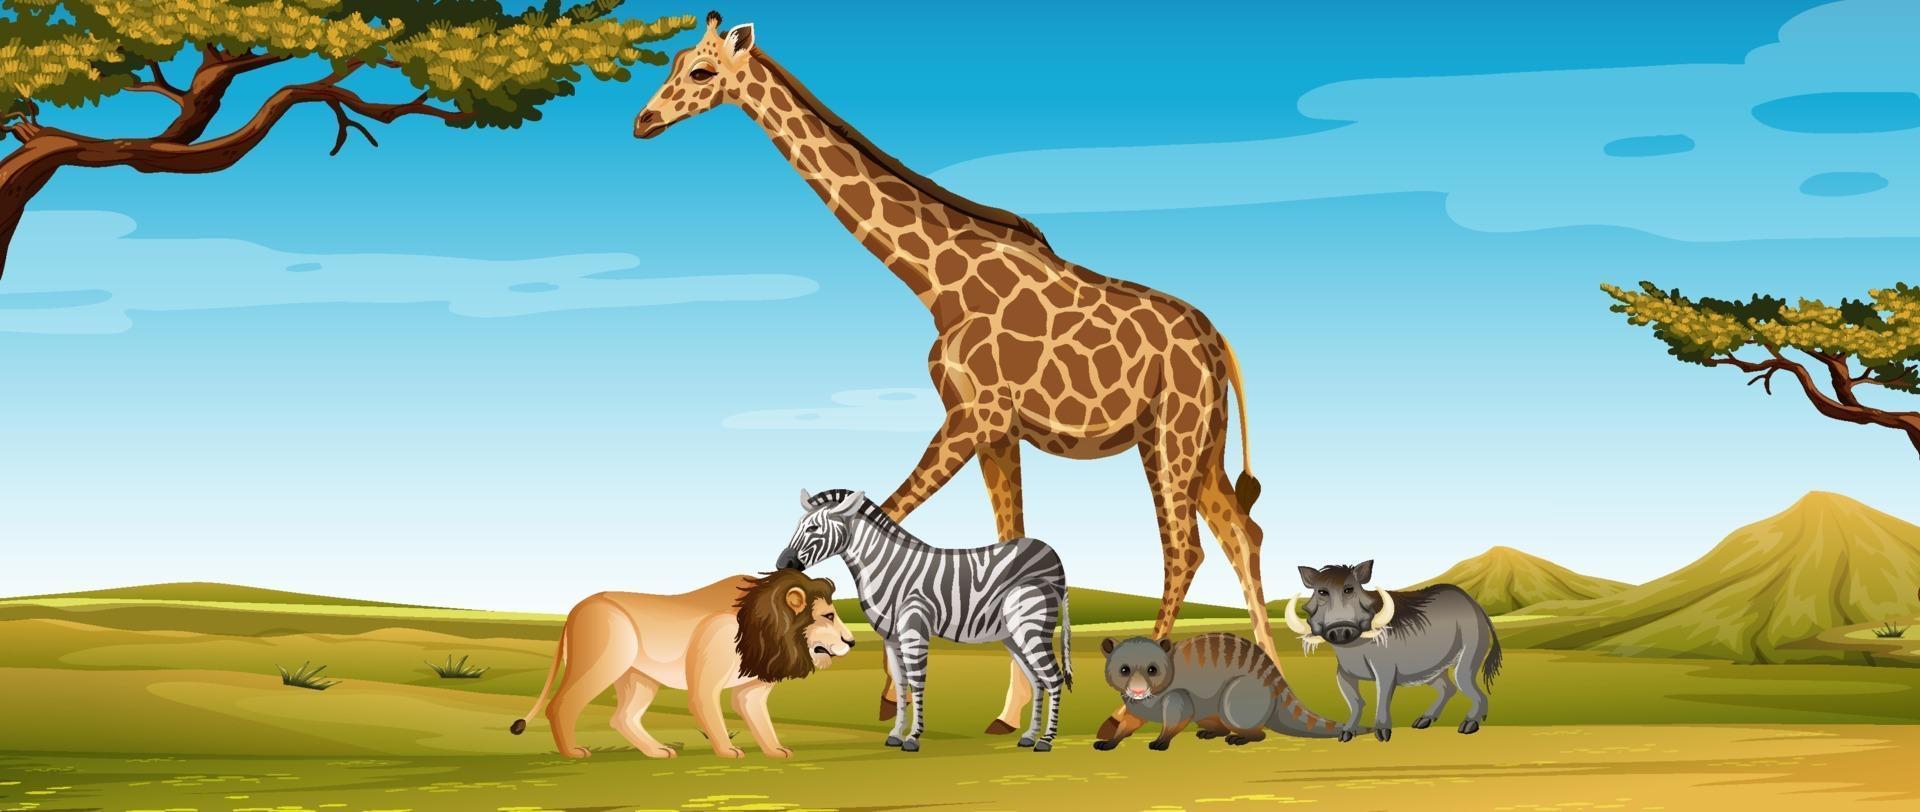 groupe d & # 39; animaux sauvages africains dans la scène du zoo vecteur